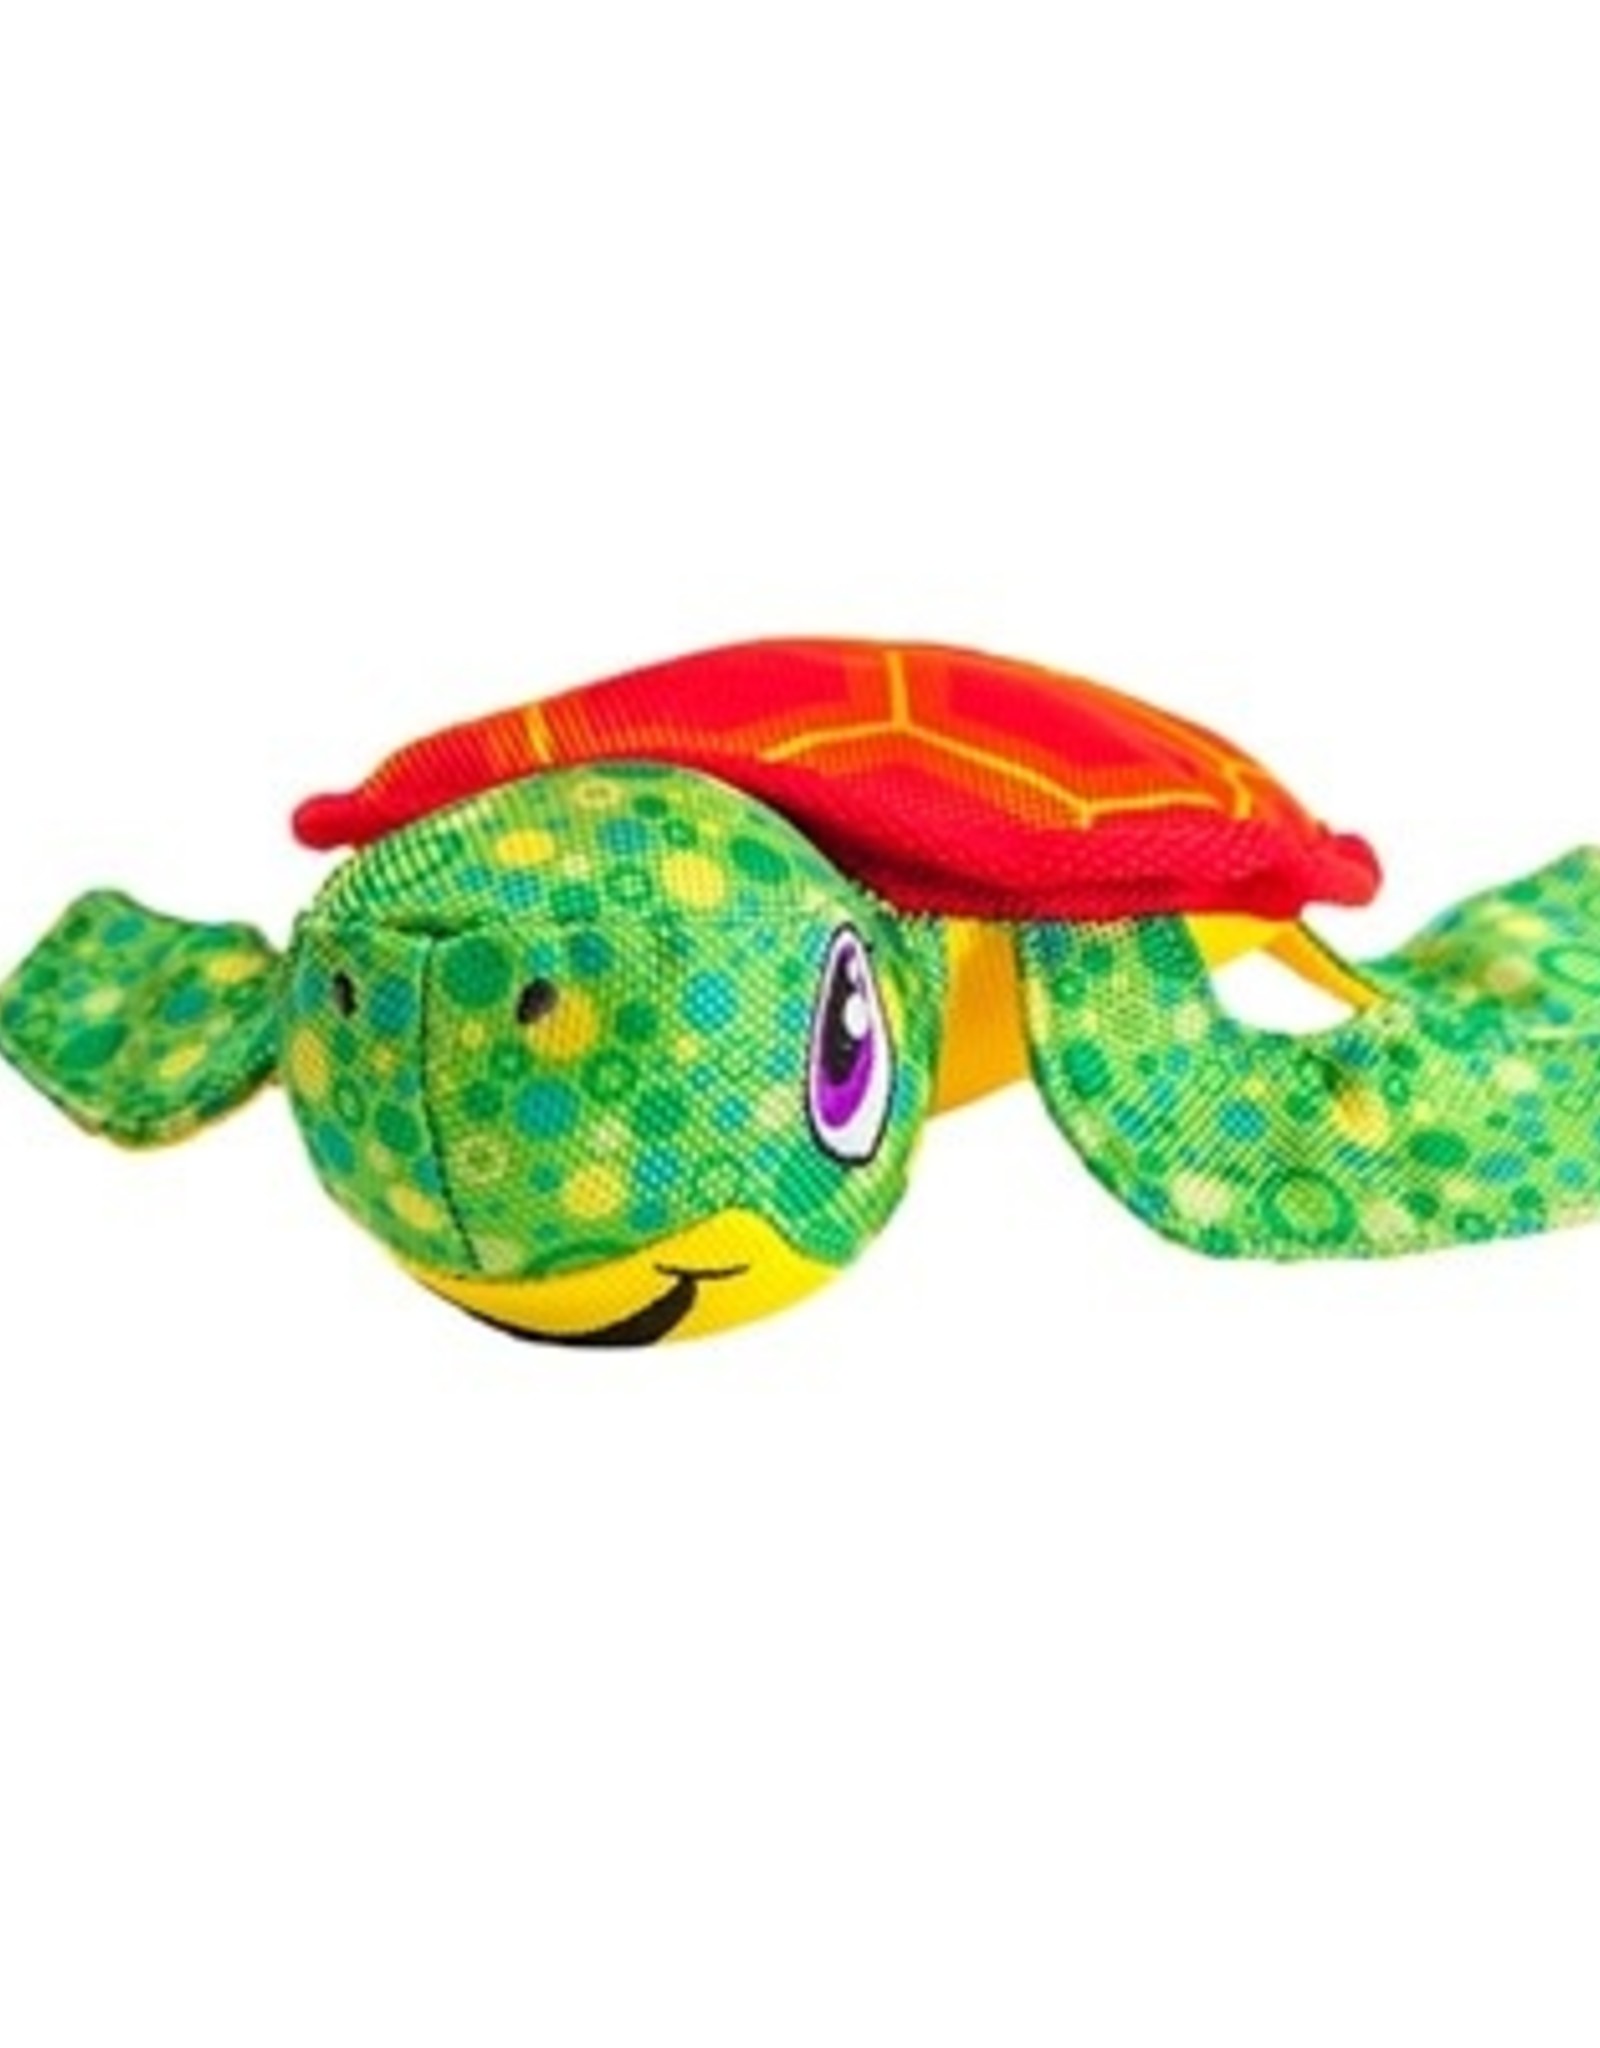 Outward Hound Floatiez Turtle Pet Toy